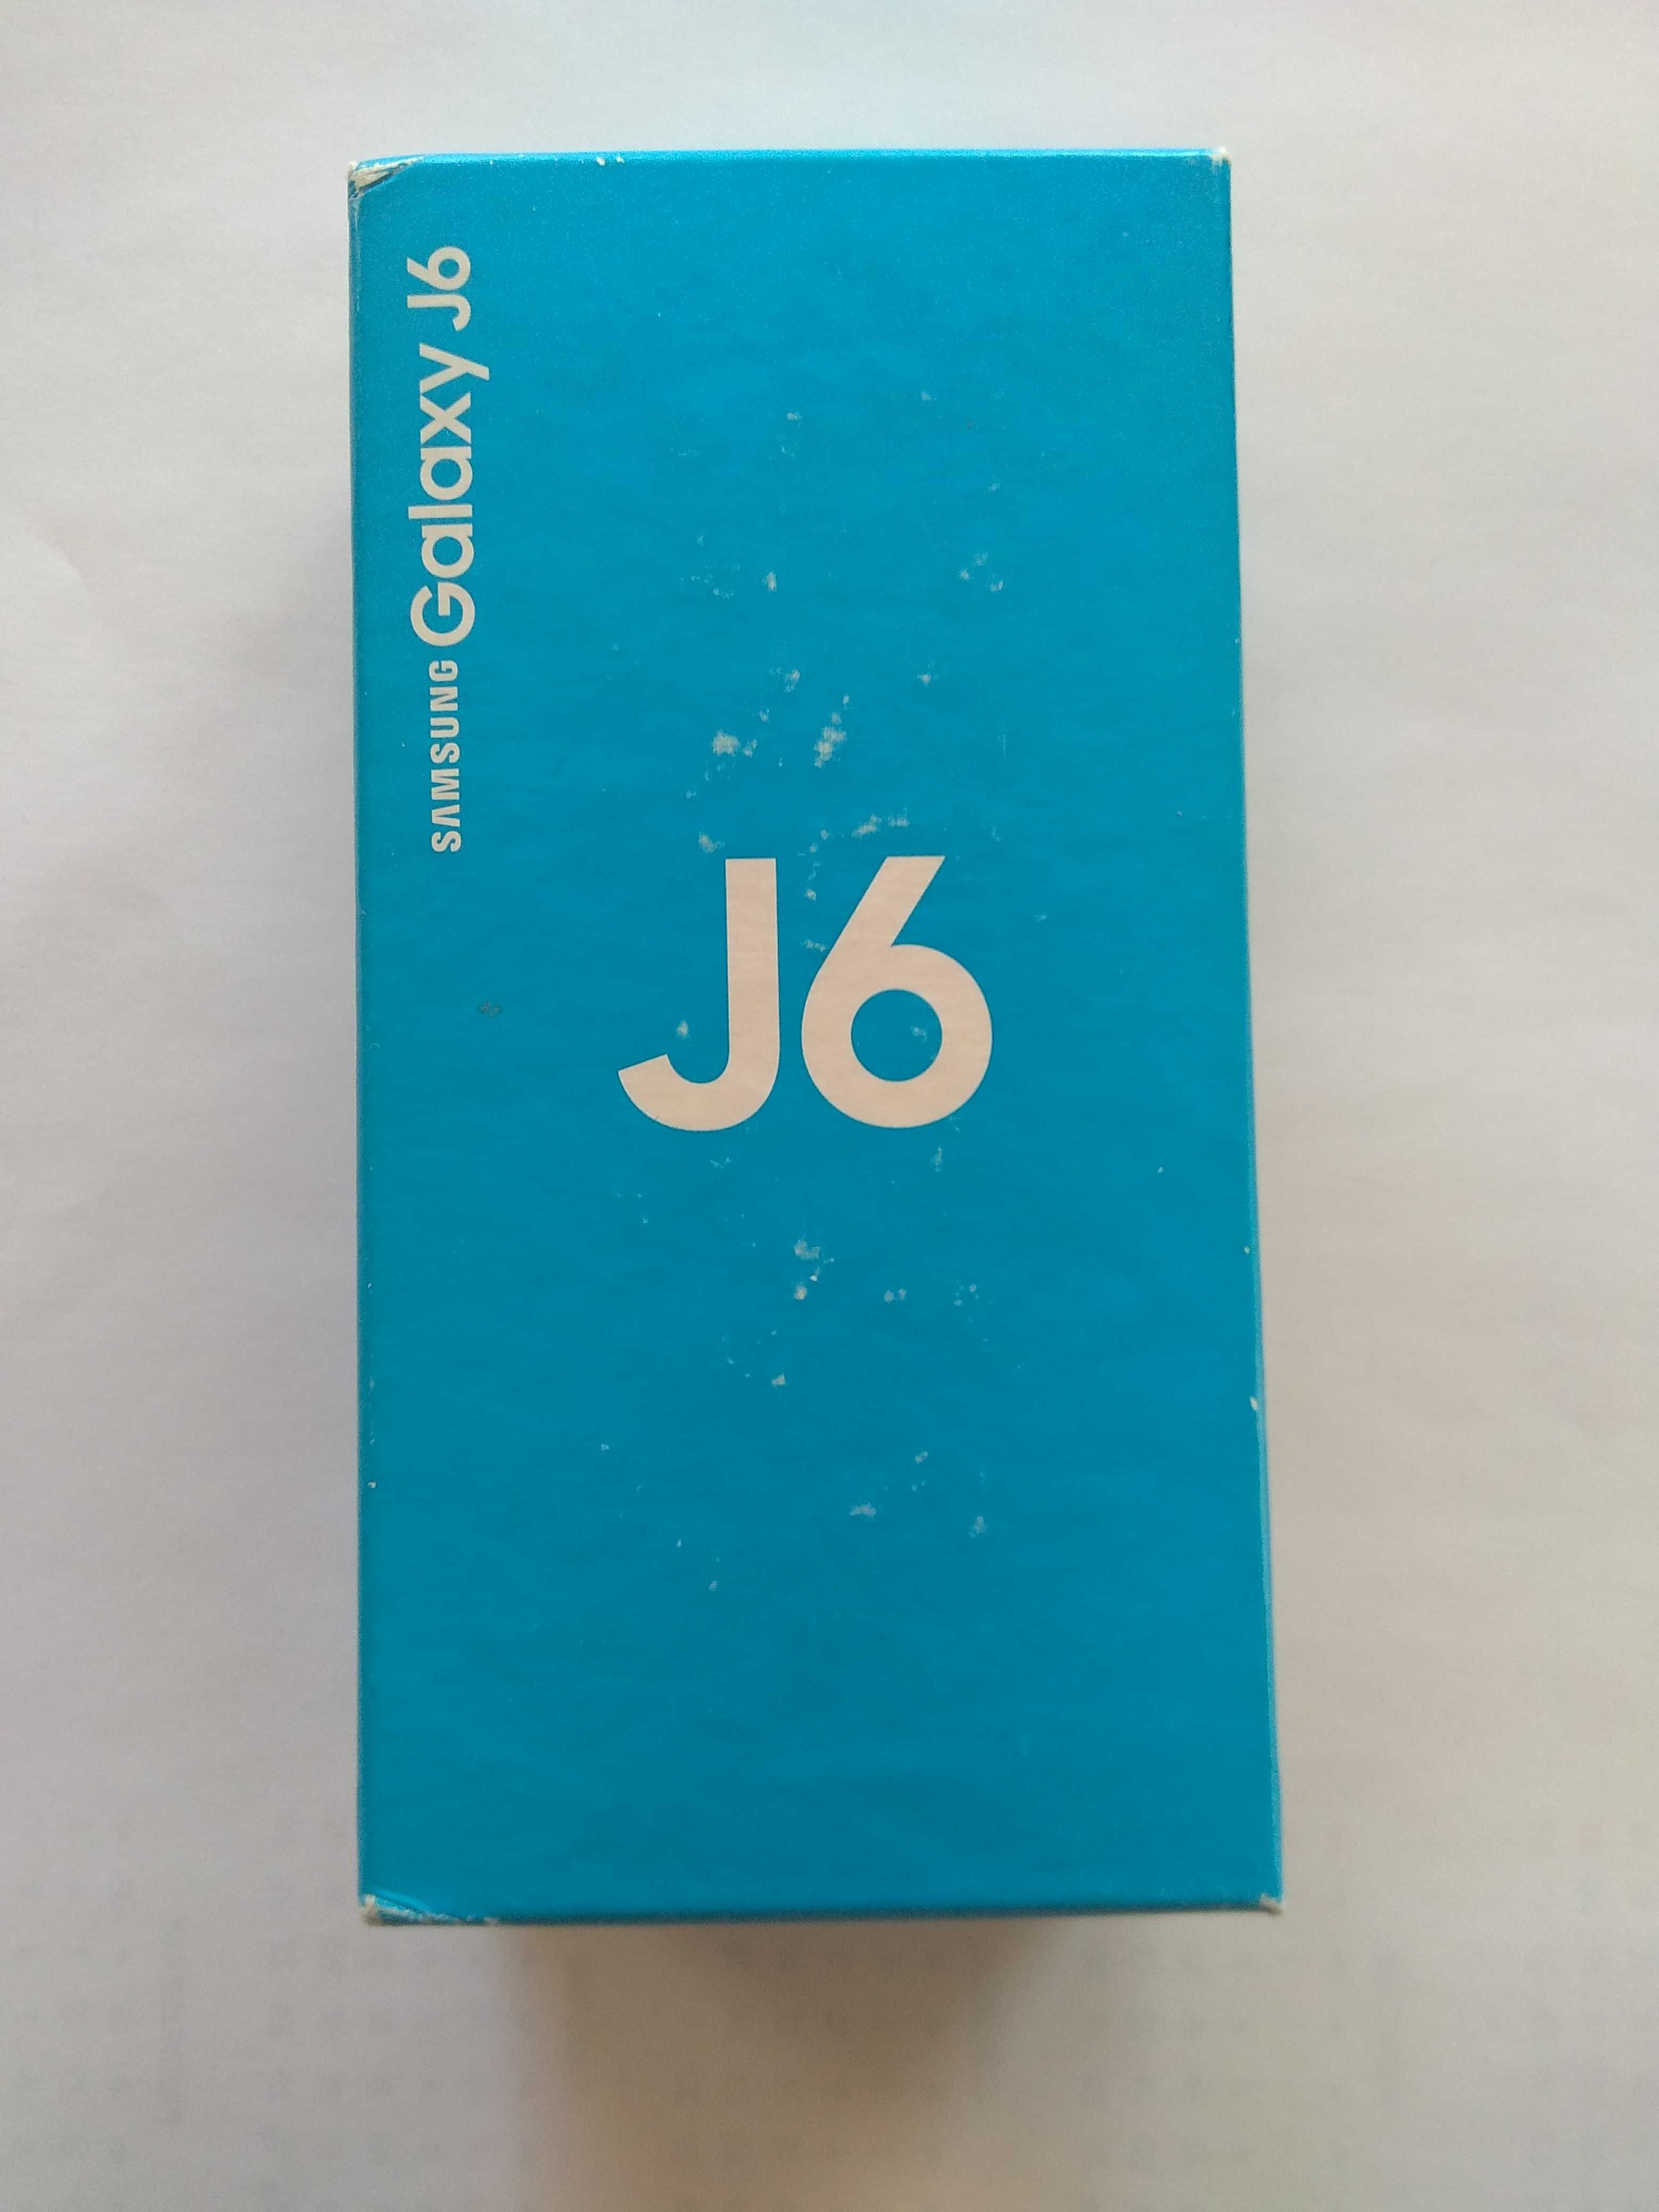 Samsung Galaxy J6 pudełko do telefonu z wytłoczką foliami instrukcjami